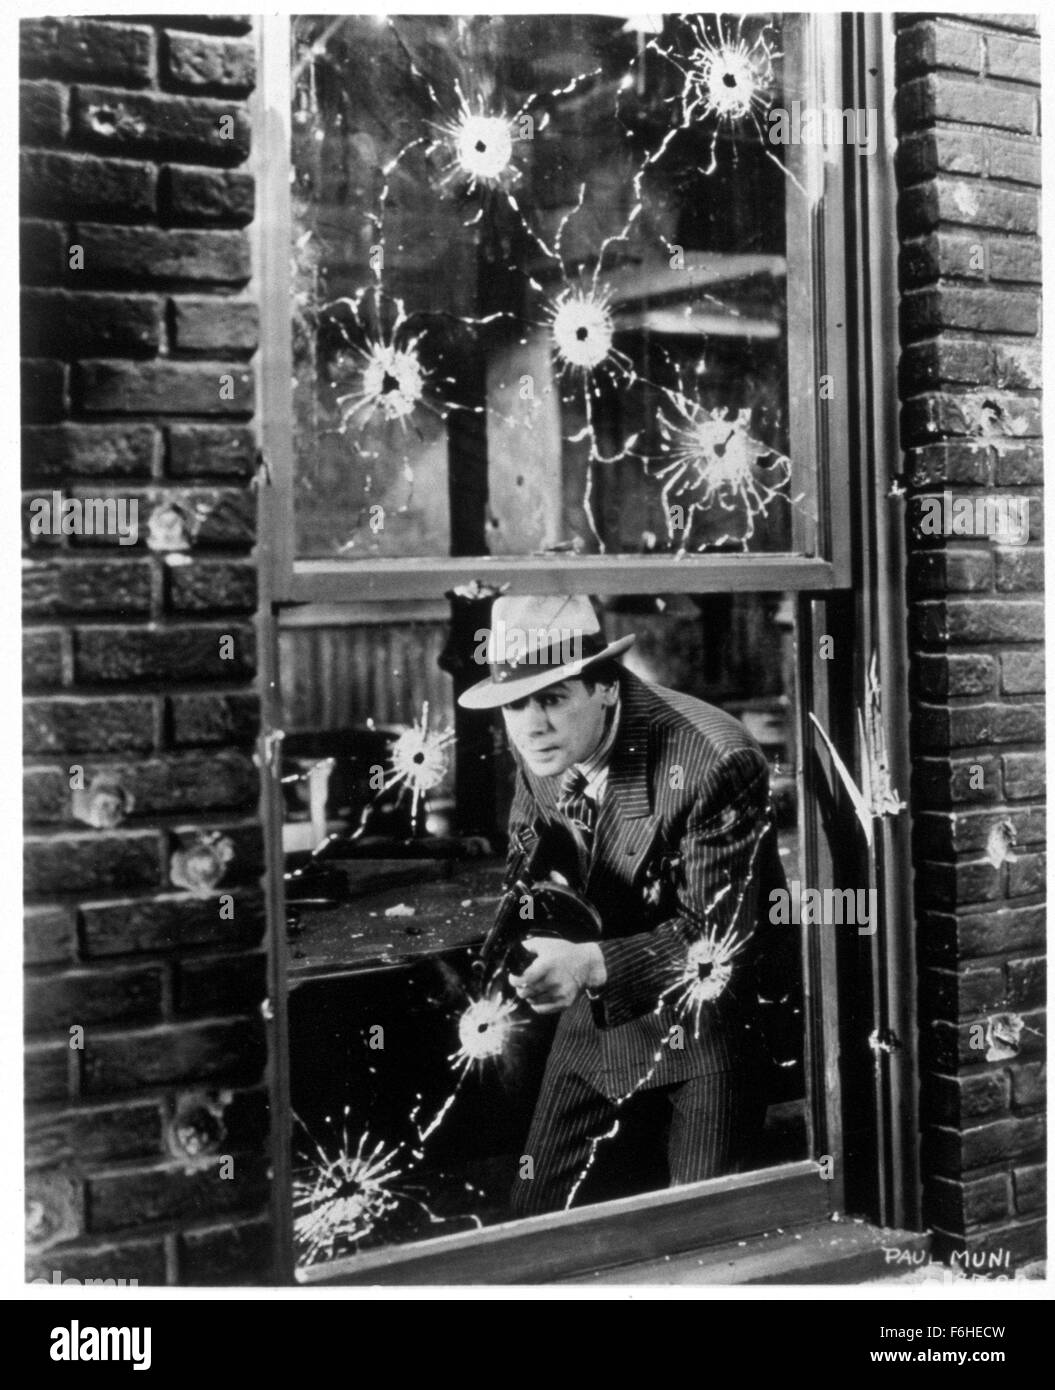 1932, il titolo del film: SCARFACE, Direttore: Howard Hawks, Studio: WB, nella foto: vetro, vetro, 1932, Gun Crazy a pistola, cappello, PAUL MUNI, armi, nascondere, gangster, pista WARFARE, SHOOT OUT. (Credito Immagine: SNAP) Foto Stock